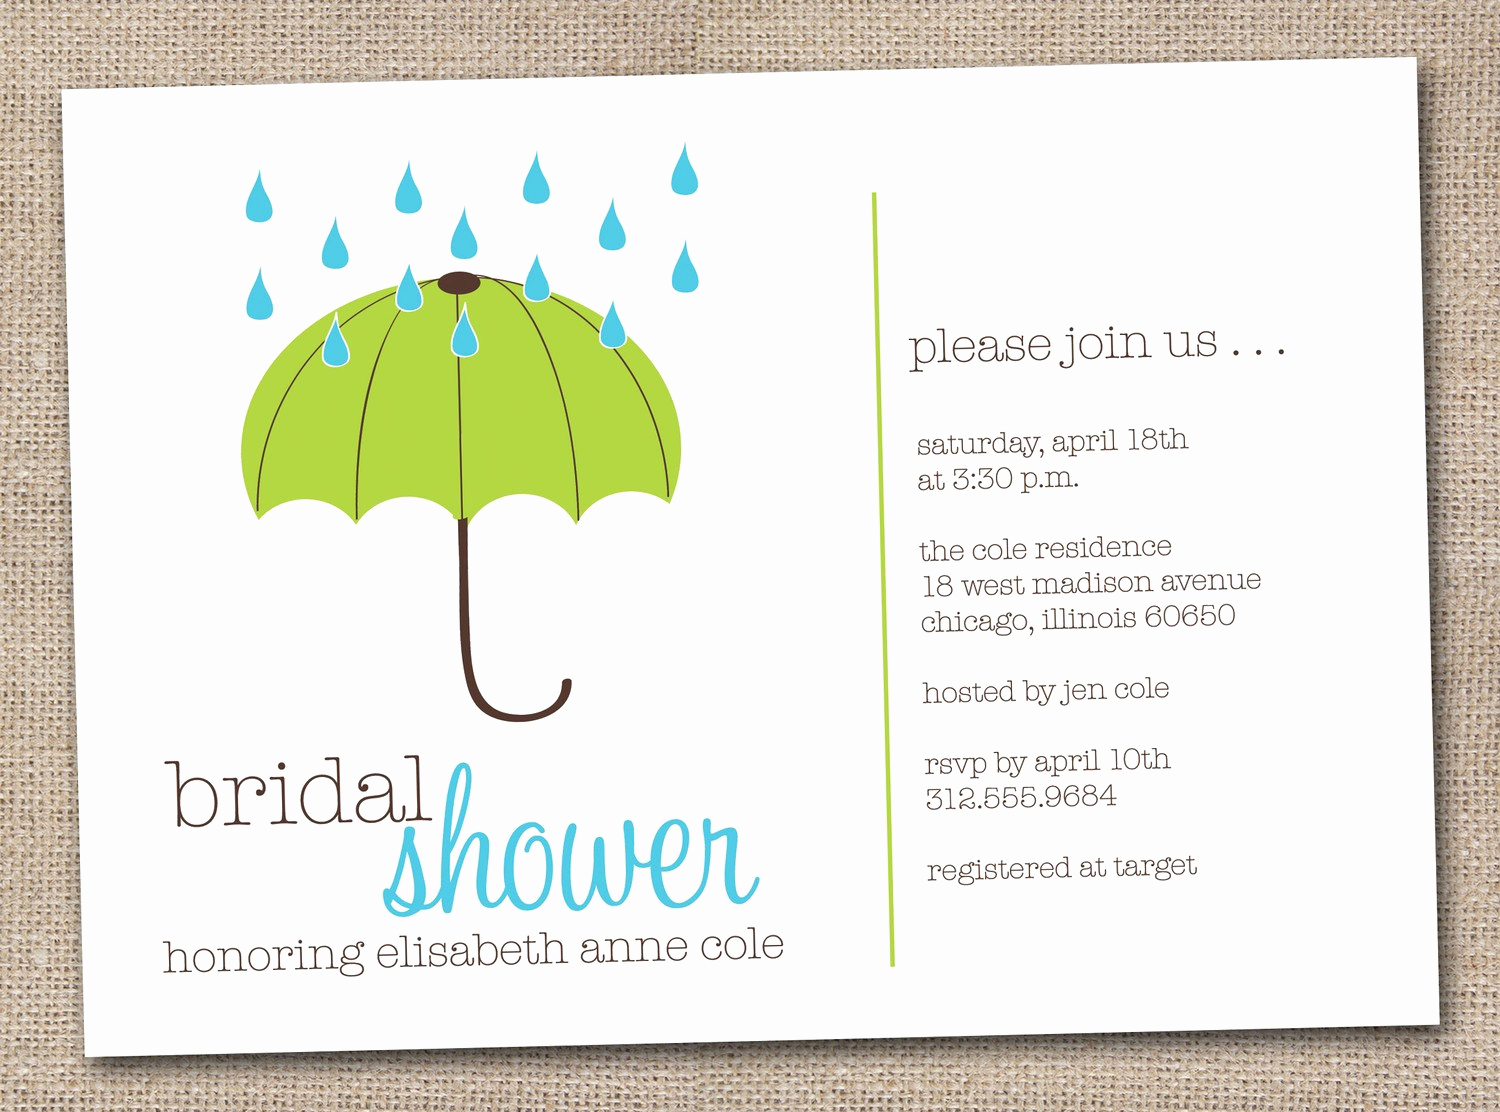 Printable Bridal Shower Invitations Lovely Printable Bridal Shower Invitations Green by